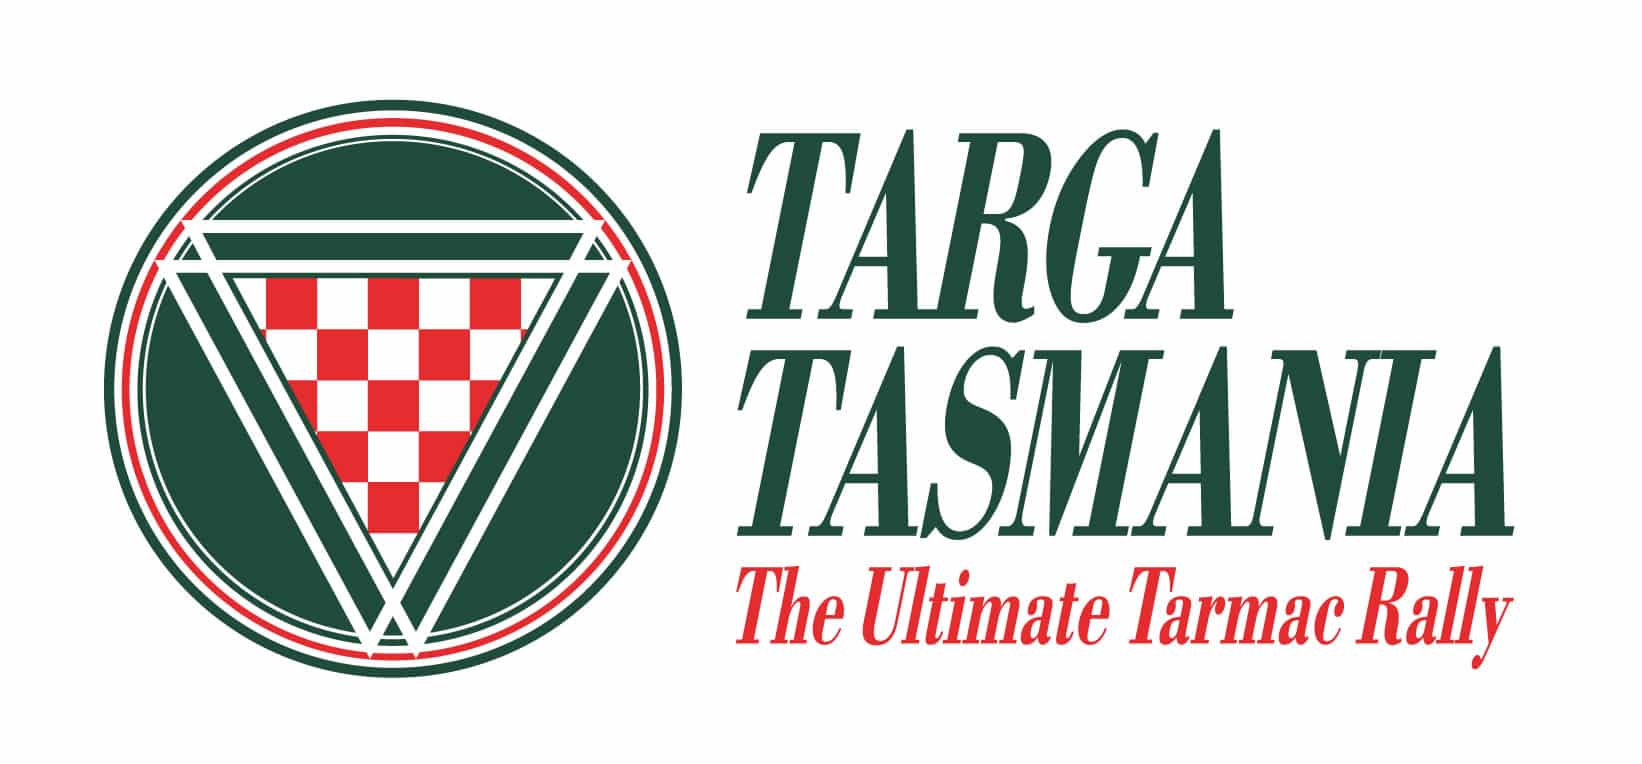 targa tasmania logo